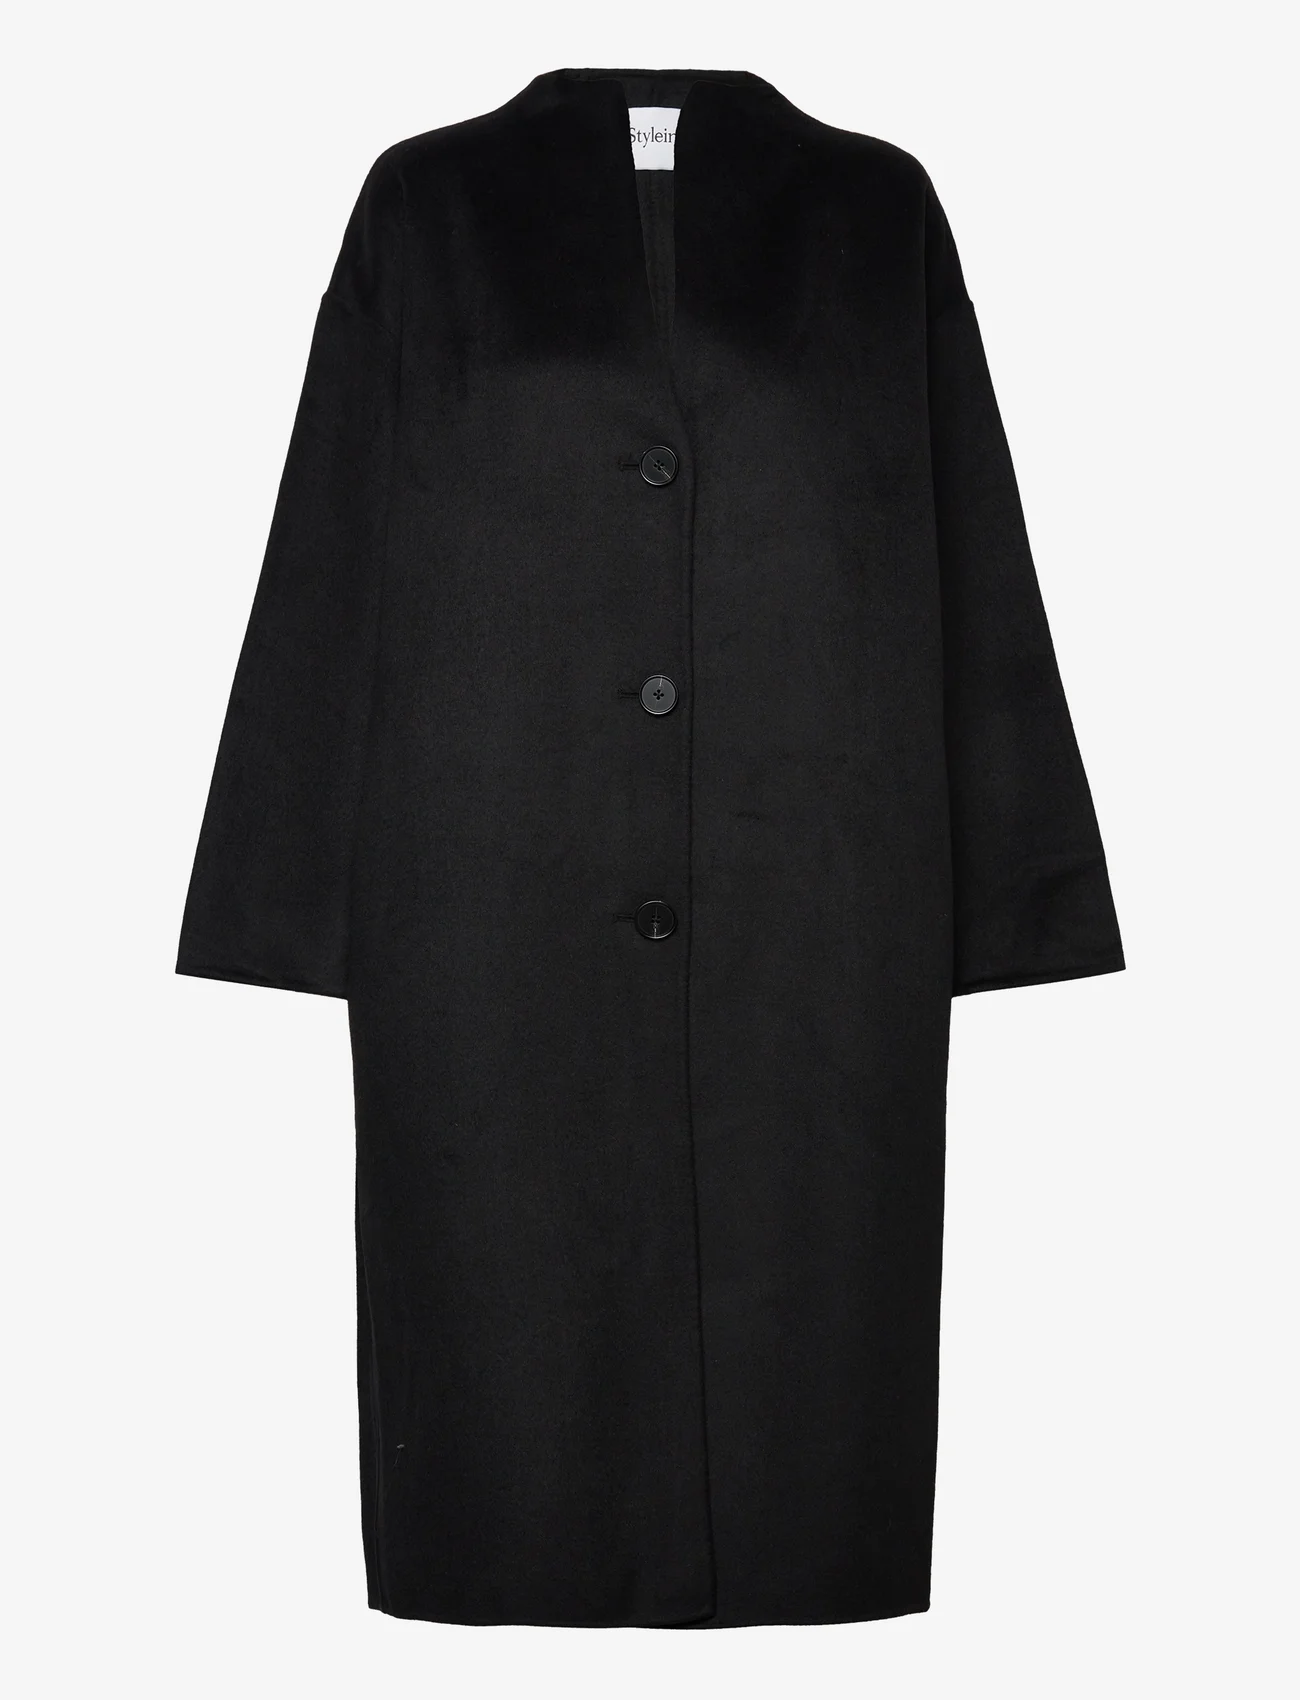 Stylein - THIVON - winter coats - black - 0